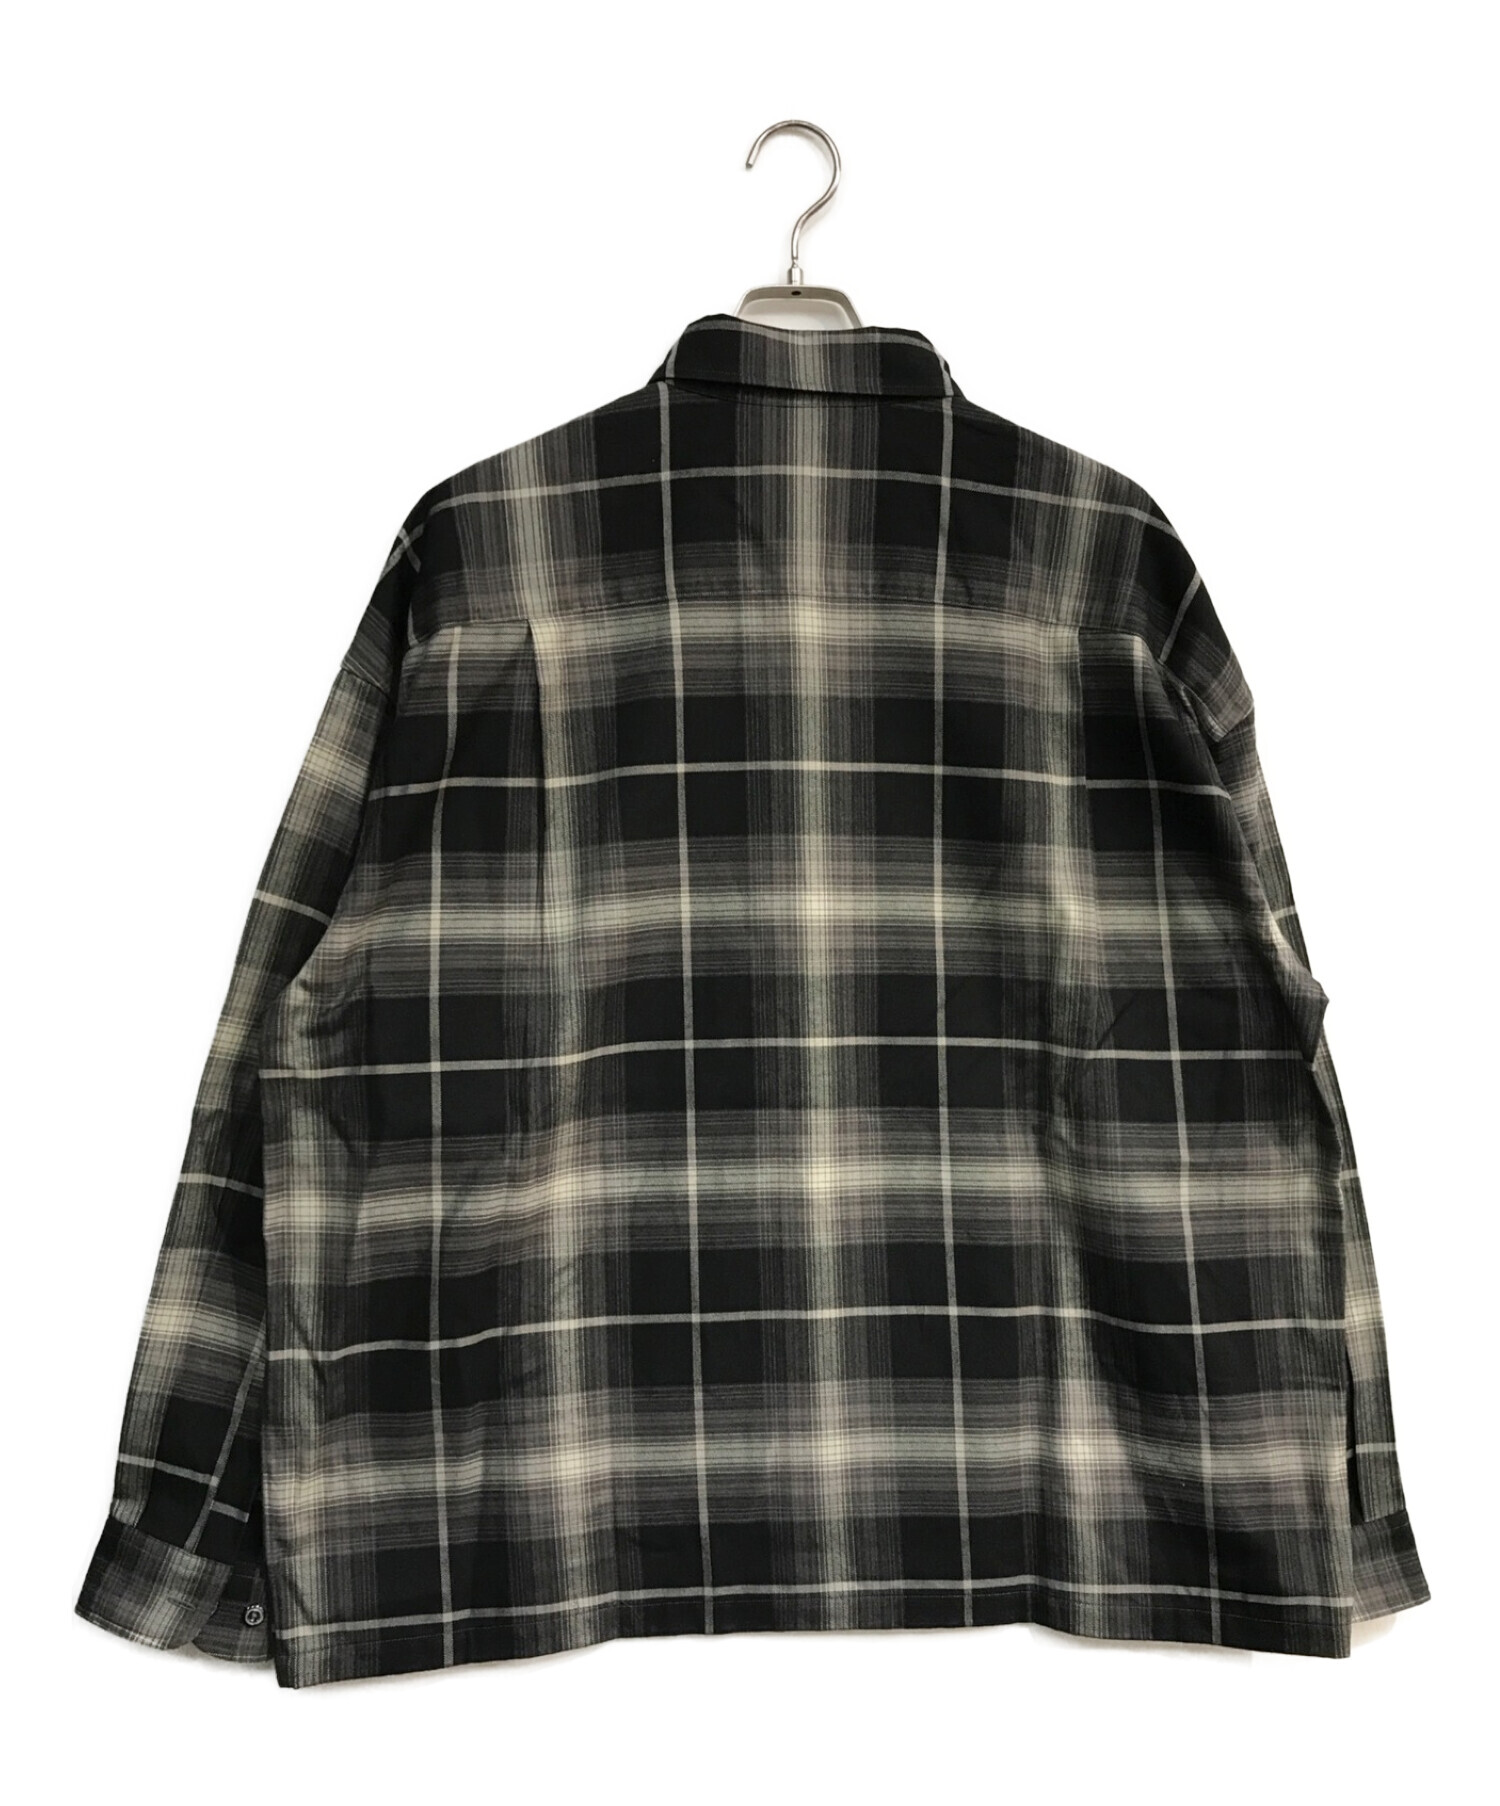 COOTIE (クーティー) R/C Ombre Check L/S Shirt　オンブレチェックシャツ ブラック サイズ:M 未使用品